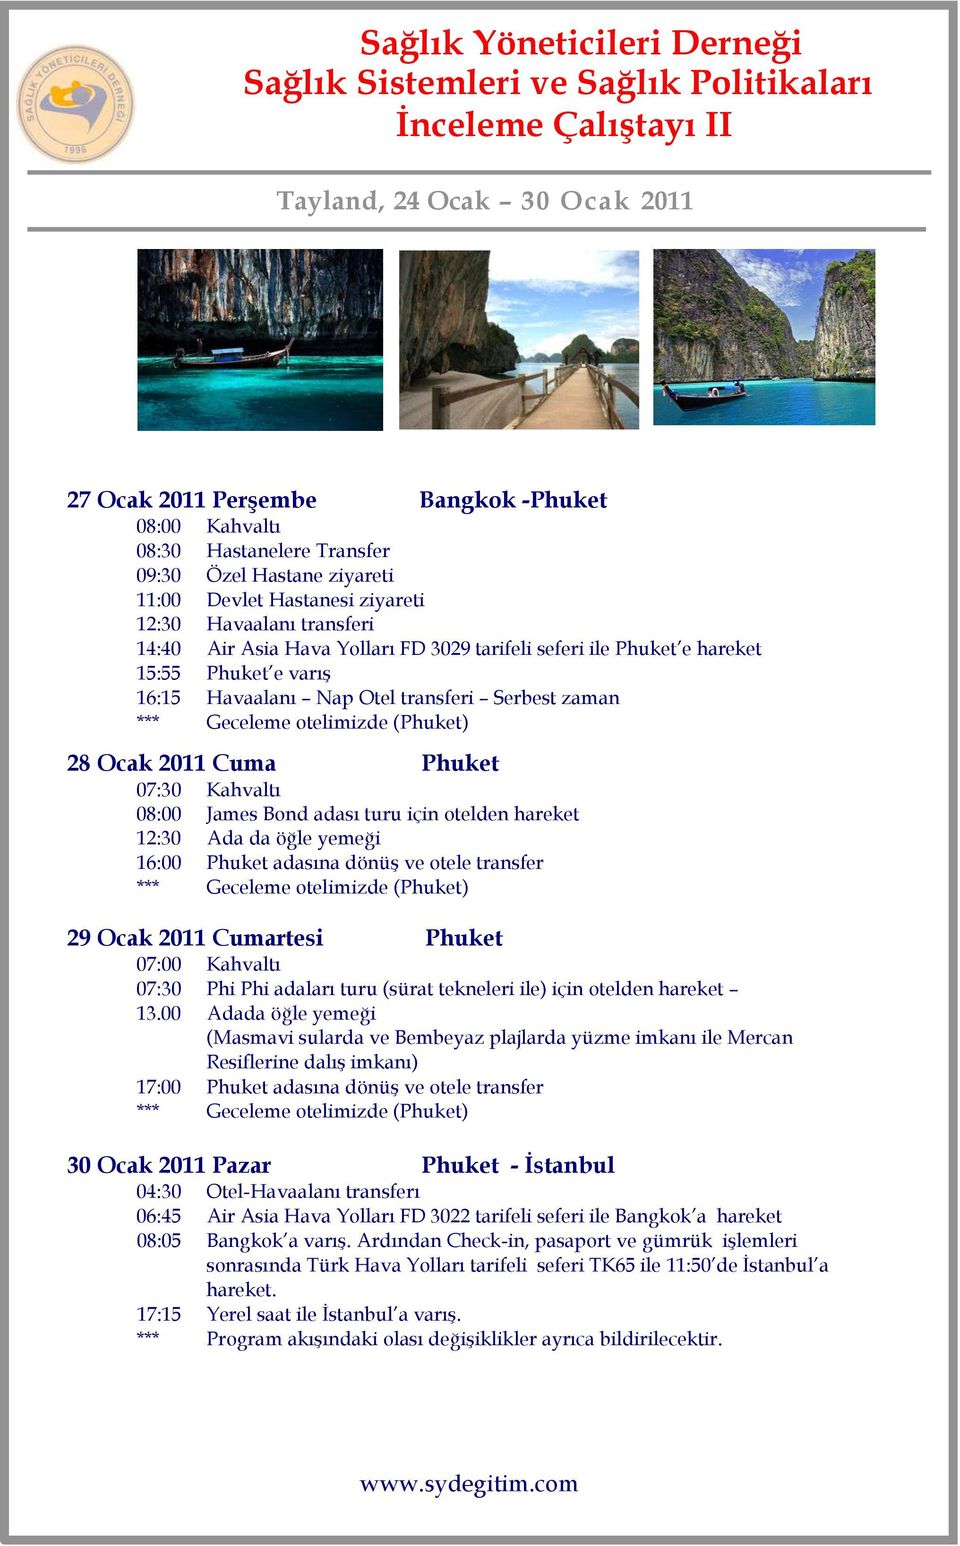 Bond adası turu için otelden hareket 12:30 Ada da öğle yemeği 16:00 Phuket adasına dönüş ve otele transfer *** Geceleme otelimizde (Phuket) 29 Ocak 2011 Cumartesi Phuket 07:00 Kahvaltı 07:30 Phi Phi